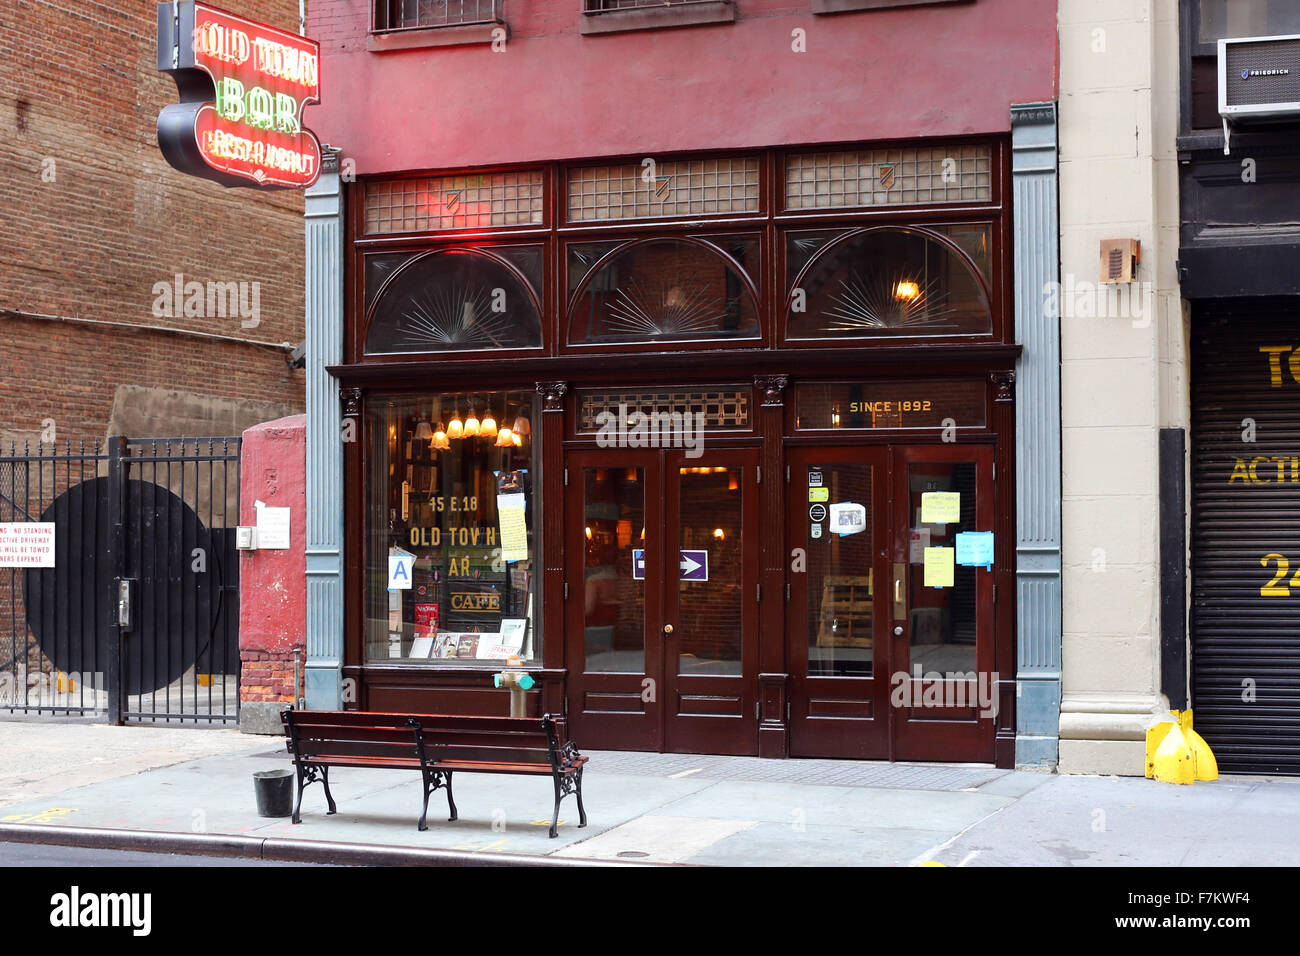 Old Town Bar y Restaurante, 45 E. 18th St, Nueva York. exterior del escaparate de un bar y un restaurante en el barrio de Gramercy en Manhattan. Foto de stock